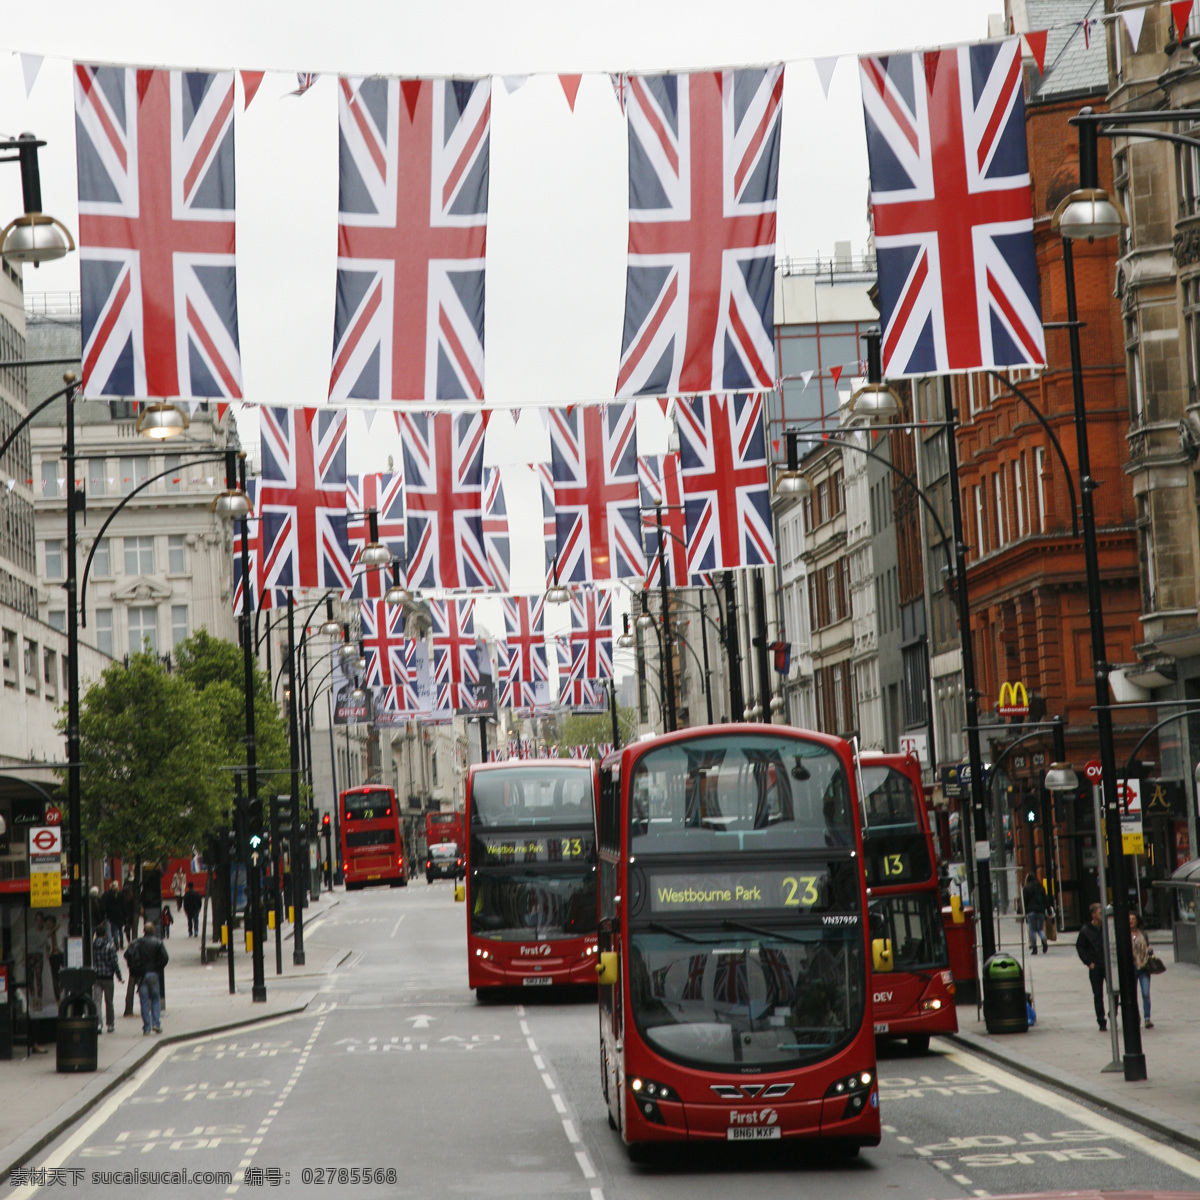 英国 双层 巴士 伦敦街道 伦敦风景 公交车 双层巴士 英国风景 名胜古迹 外国风景 旅游图片 风景名胜 风景图片